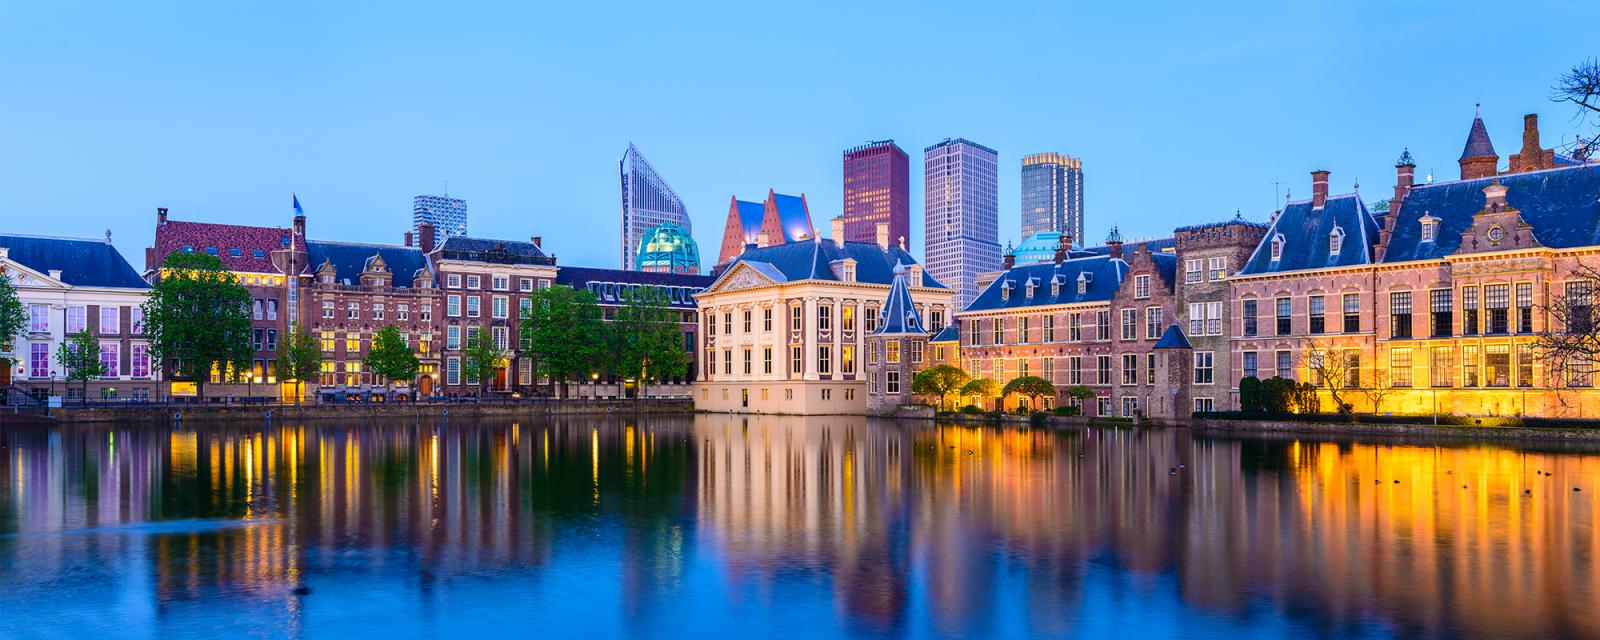 De mooiste plekken voor je stedentrip naar Den Haag 